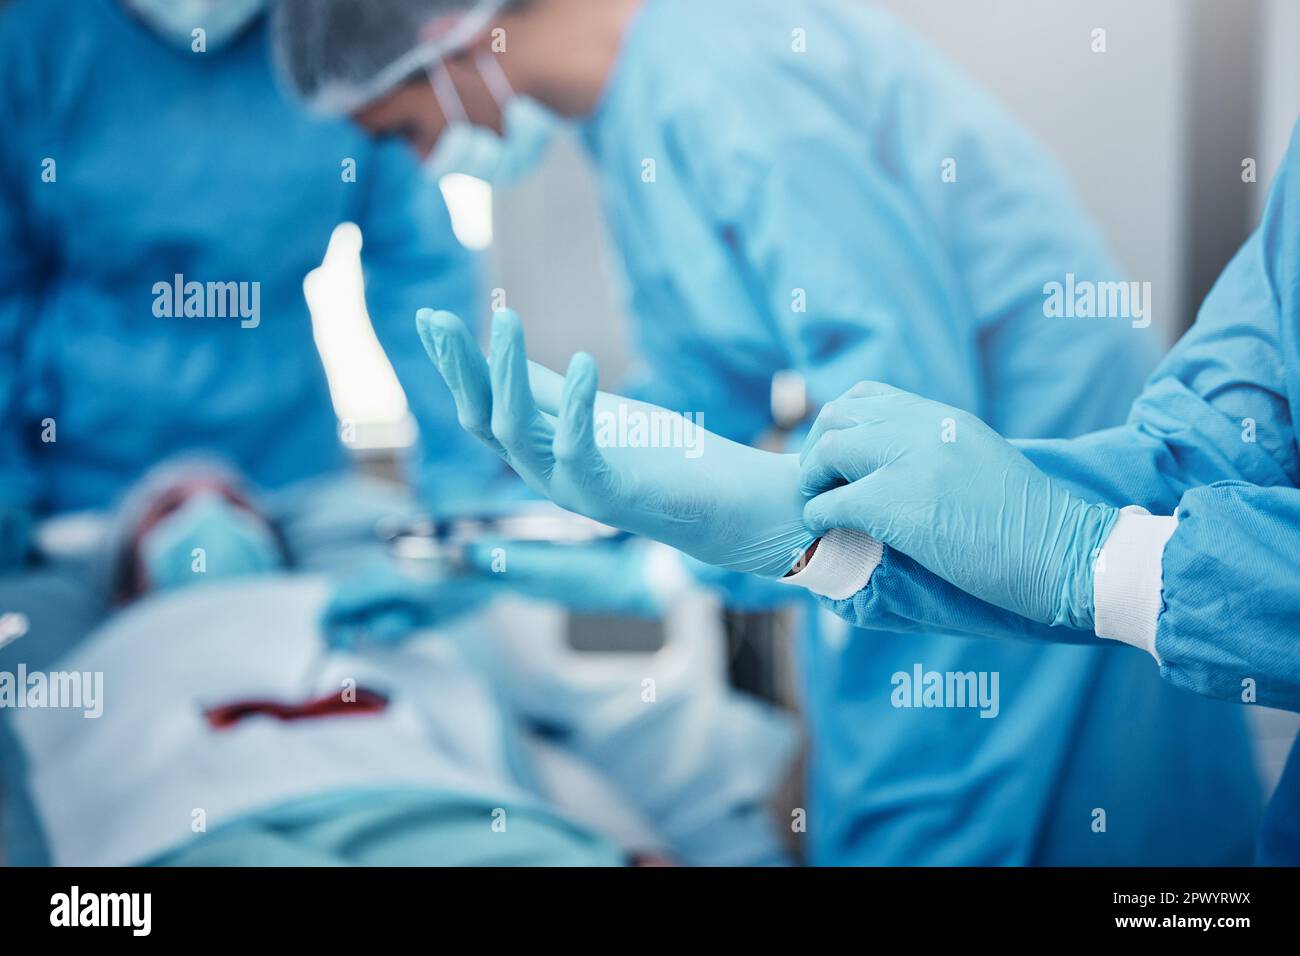 Hôpital, chirurgie et médecins en équipe avec des gants, epi et sécurité pour aider le patient au lit avec le cancer de l'estomac. Groupe de travail d'équipe de médecins, opération médicale Banque D'Images